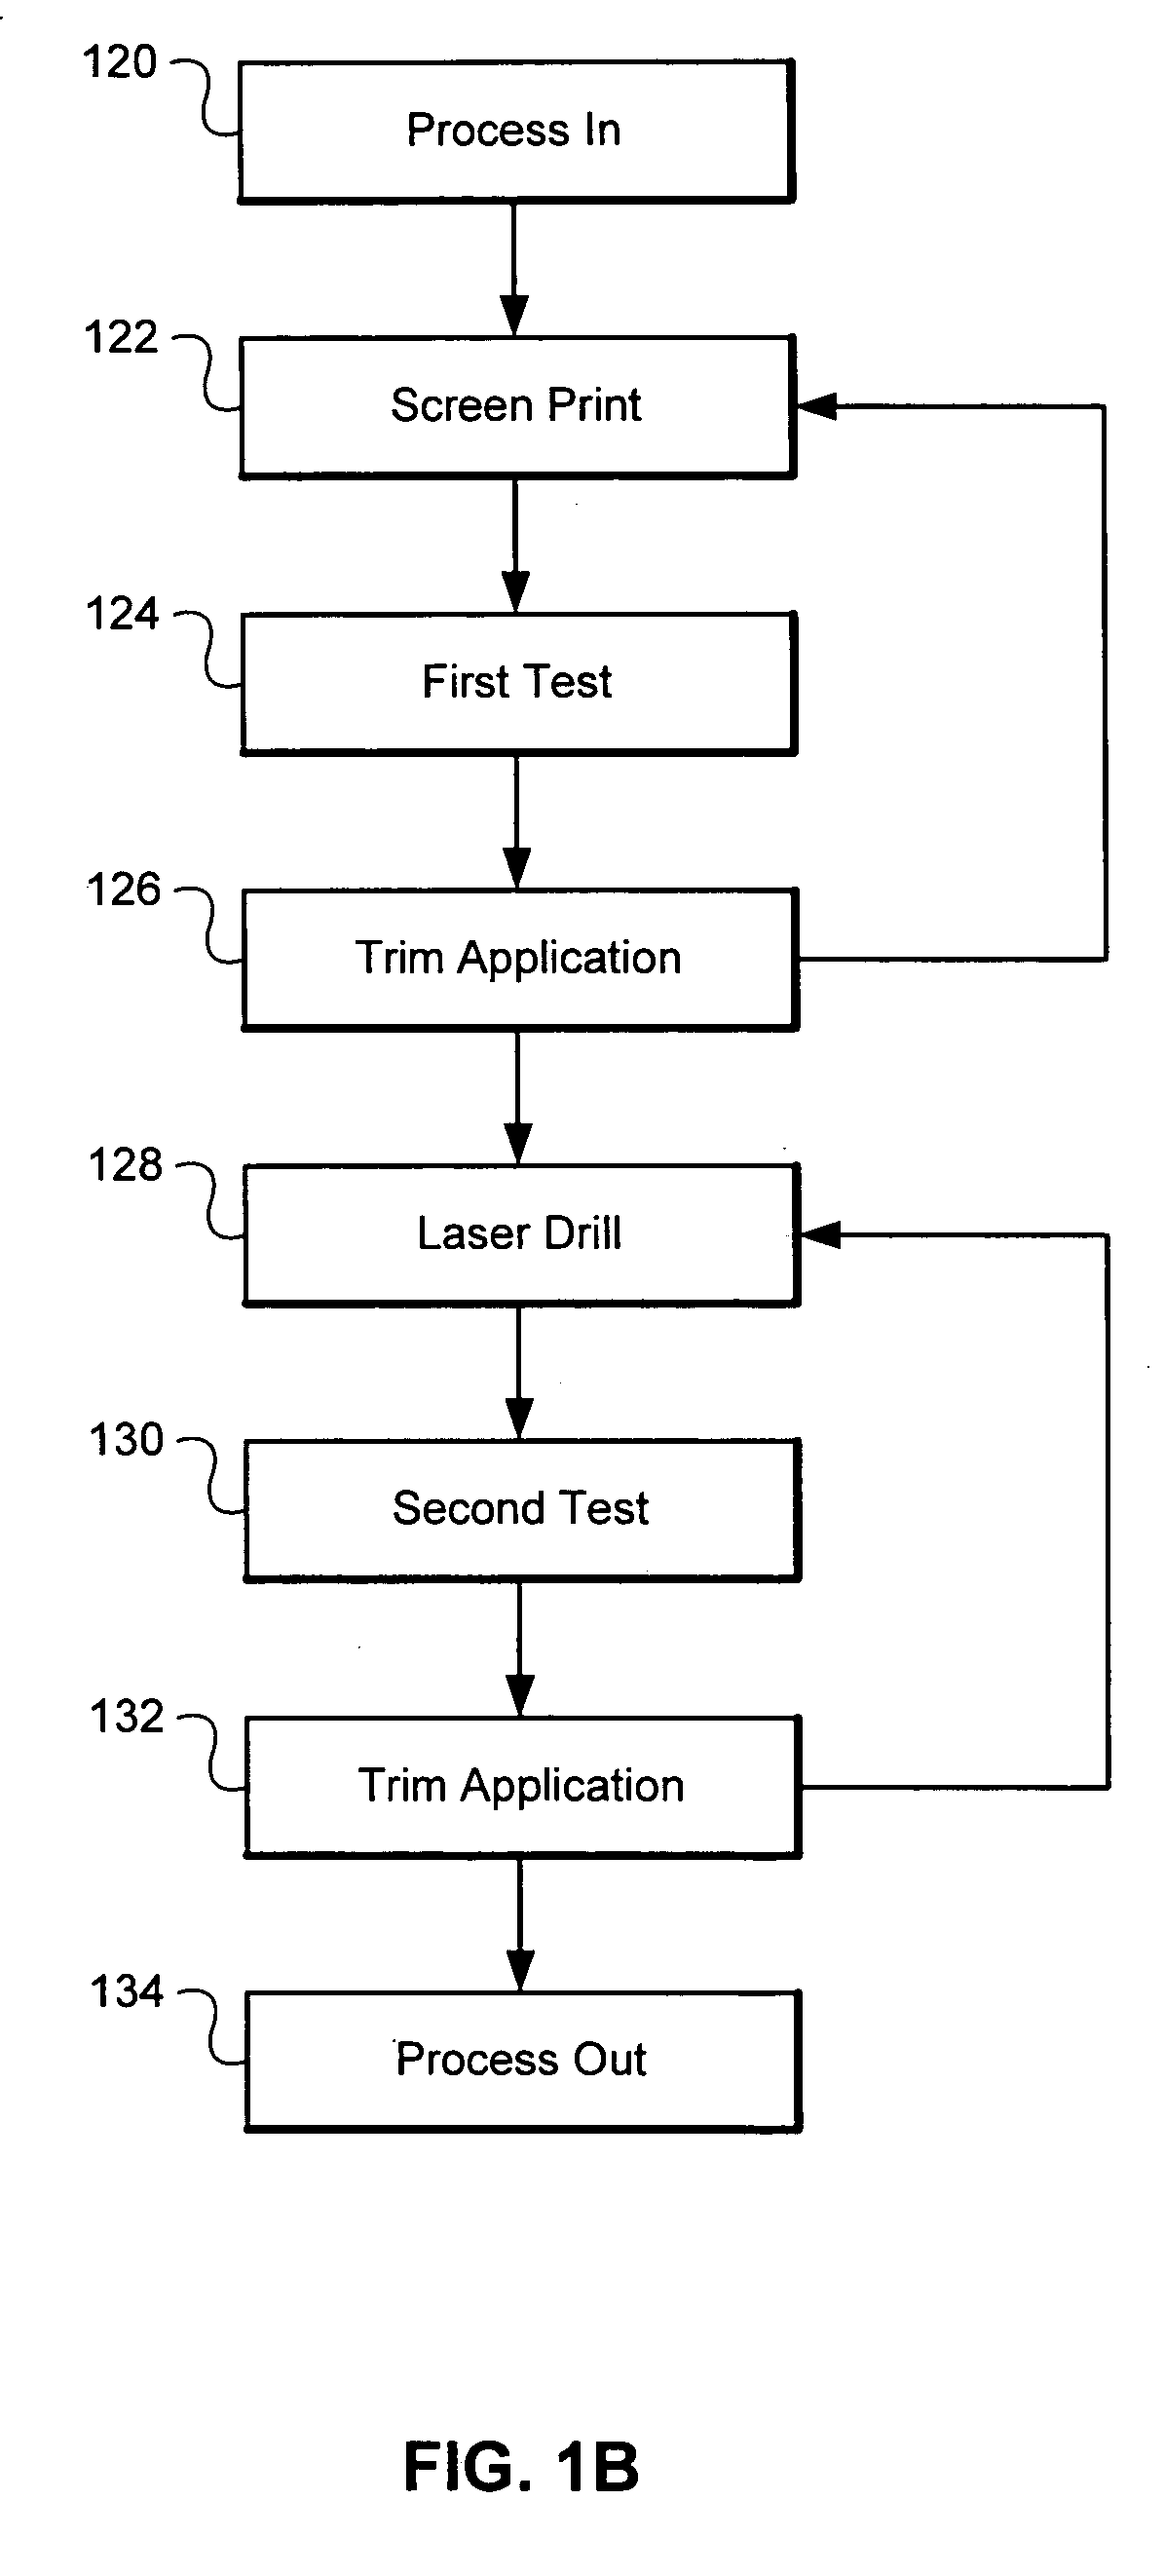 Laser trimming of resistors